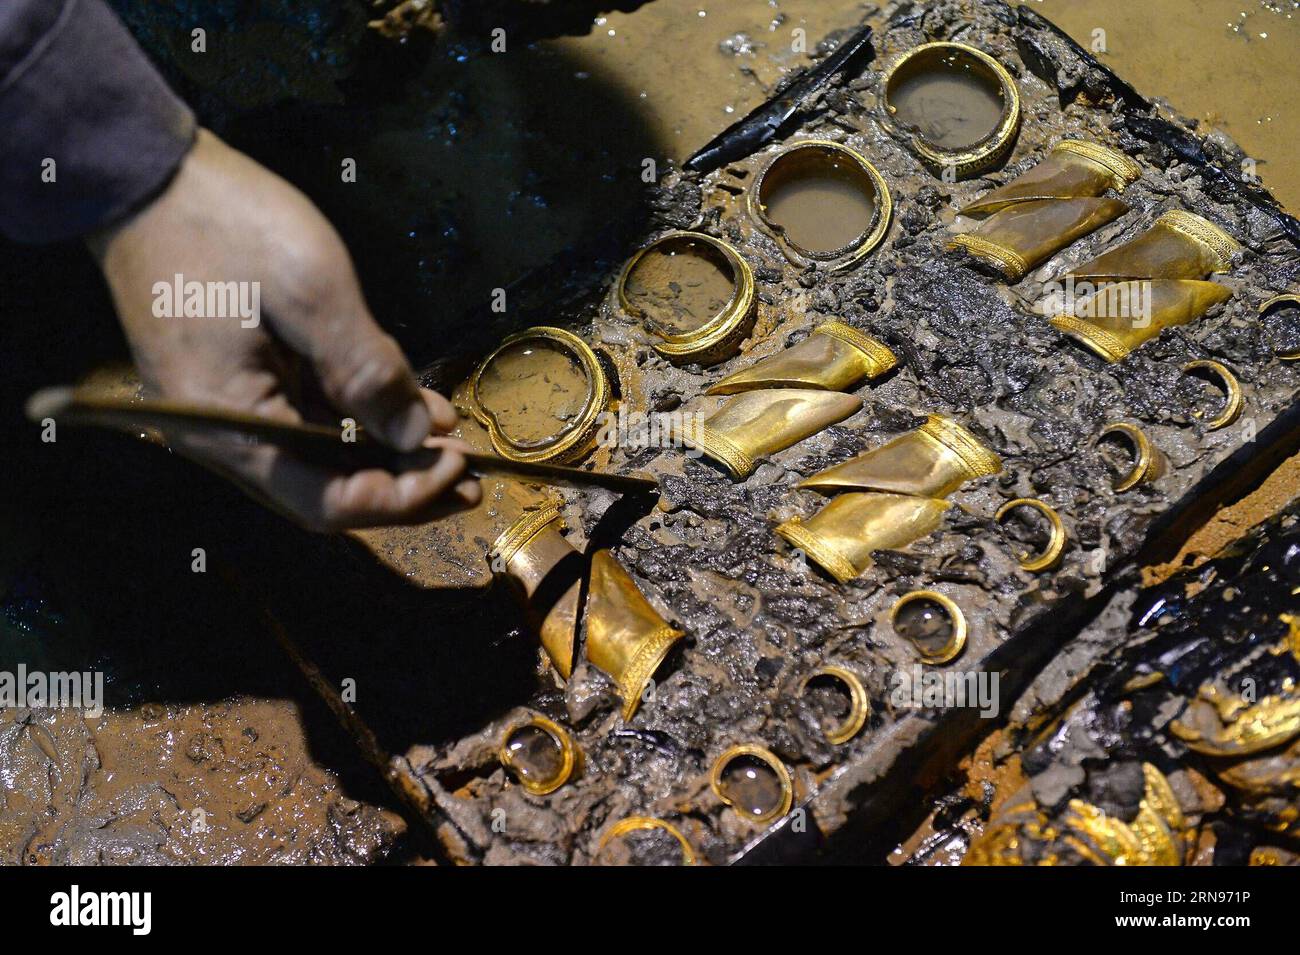 (151122) -- PEKING, 22. November 2015 -- ein Archäologe reinigt die hufförmigen Barren in einem aristokratischen Grab, das aus der westlichen Han-Dynastie (206 v. Chr. - 24 n. Chr.) stammt, in Nanchang, der Hauptstadt der ostchinesischen Provinz Jiangxi, 17. November 2015. Chinesische Archäologen entdeckten am 17. November 75 Goldmünzen und hufförmige Barren im Grab. Xinhua Photo Weekly Choices WanxXiang PUBLICATIONxNOTxINxCHN 151122 Peking 22. November 2015 an Archäologe reinigt die hoof geformten Ingots in Aristokrat S Tomb Thatcher geht auf die westliche Han-Dynastie 206 v. Chr. zurück 24 pensioniert in Nanchang Hauptstadt von Ostchina S J Stockfoto